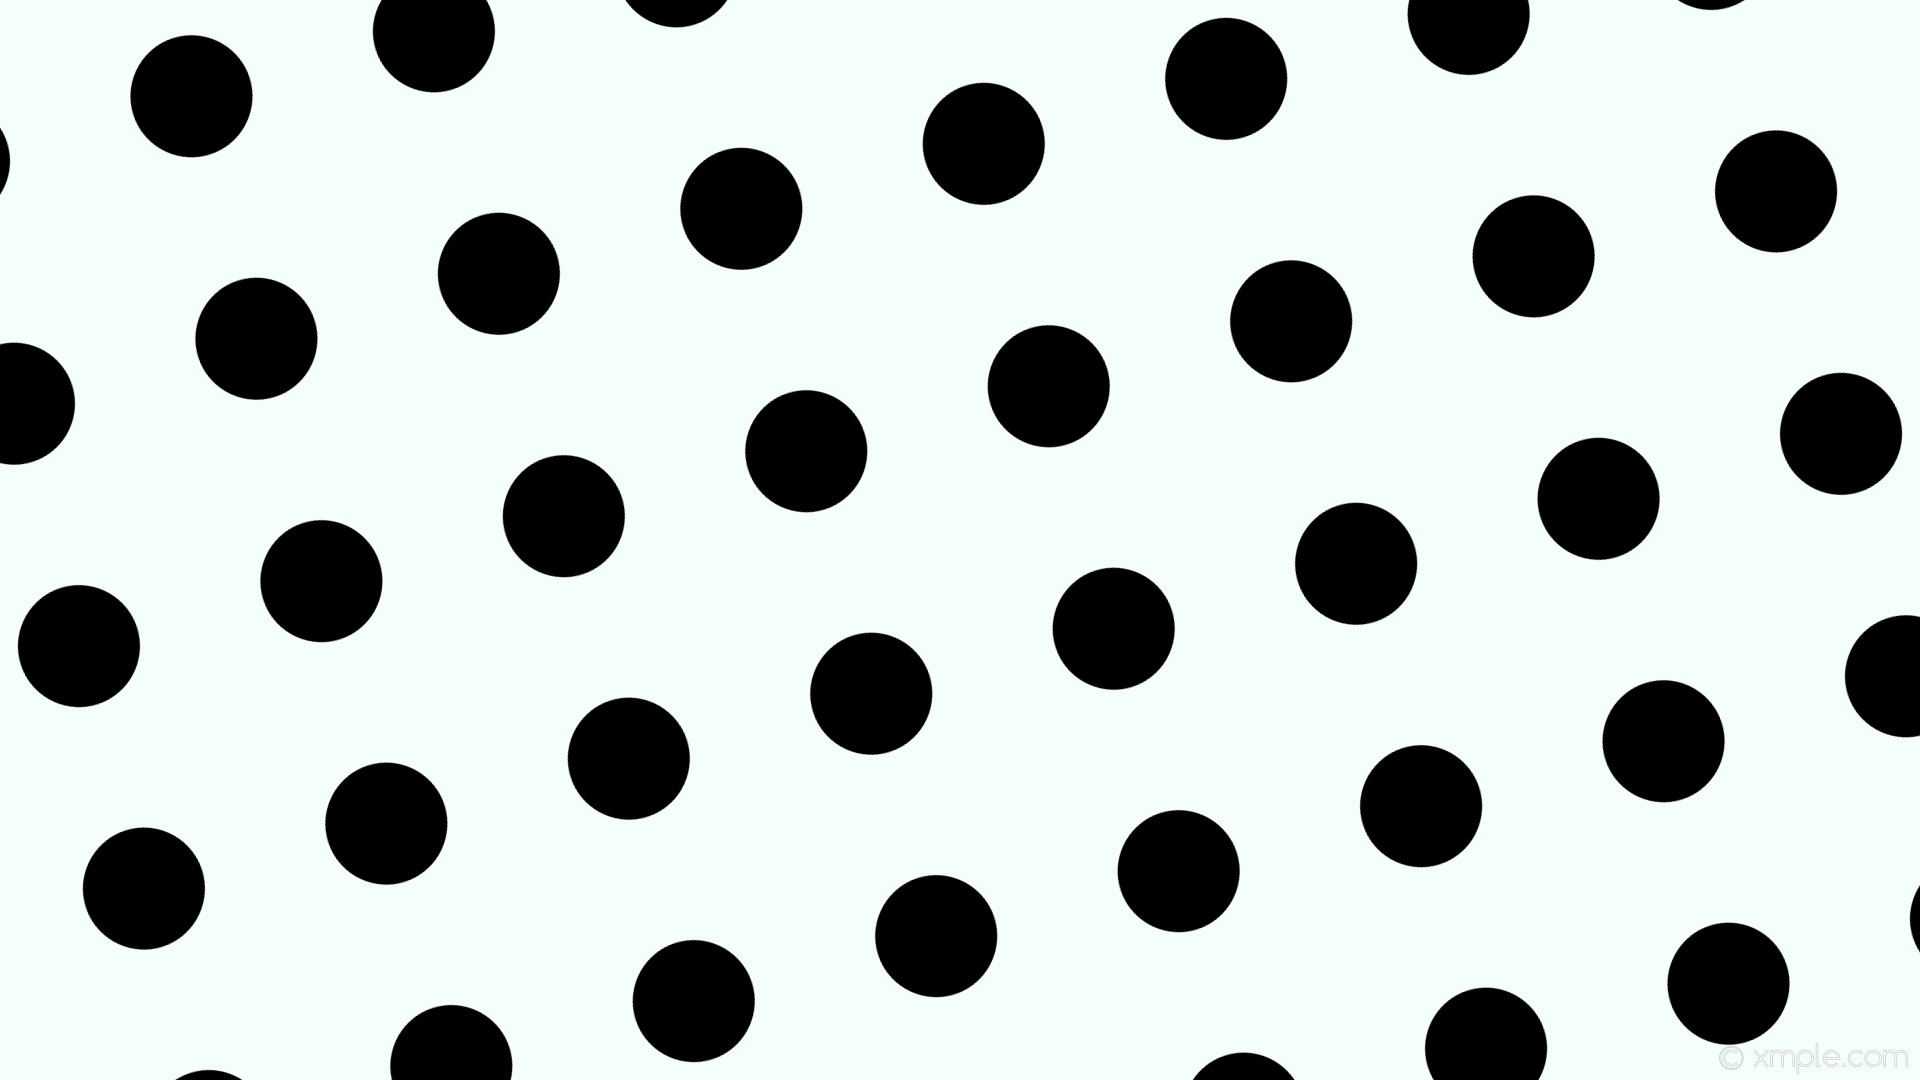 1920x1080 wallpaper black polka dots white spots mint cream #f5fffa #000000 15Â° 122px  251px